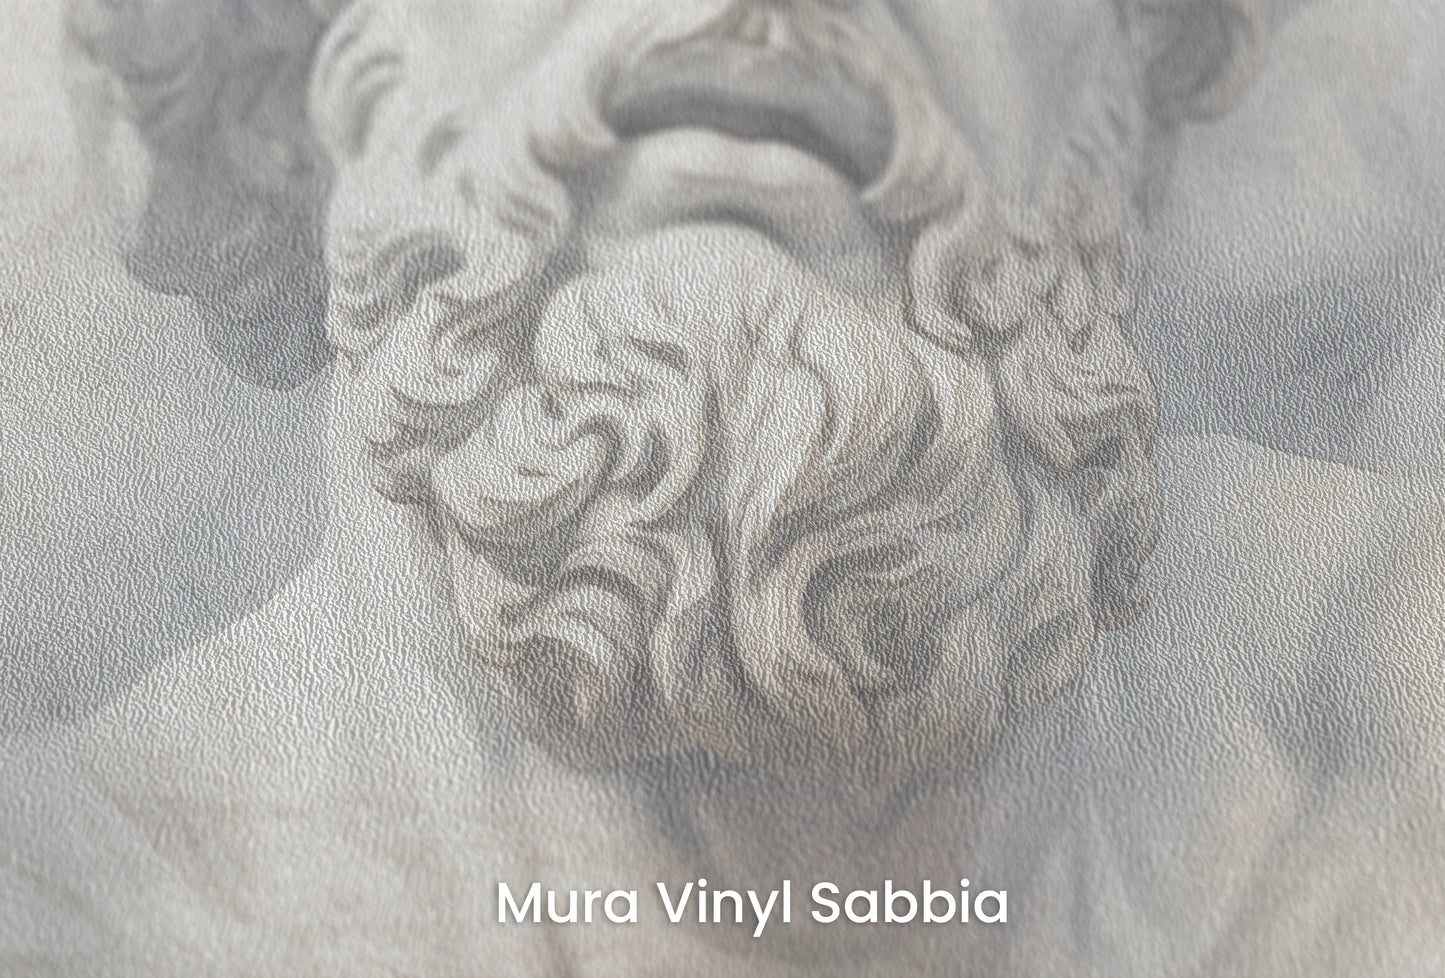 Zbliżenie na artystyczną fototapetę o nazwie Zeus's Thunder na podłożu Mura Vinyl Sabbia struktura grubego ziarna piasku.